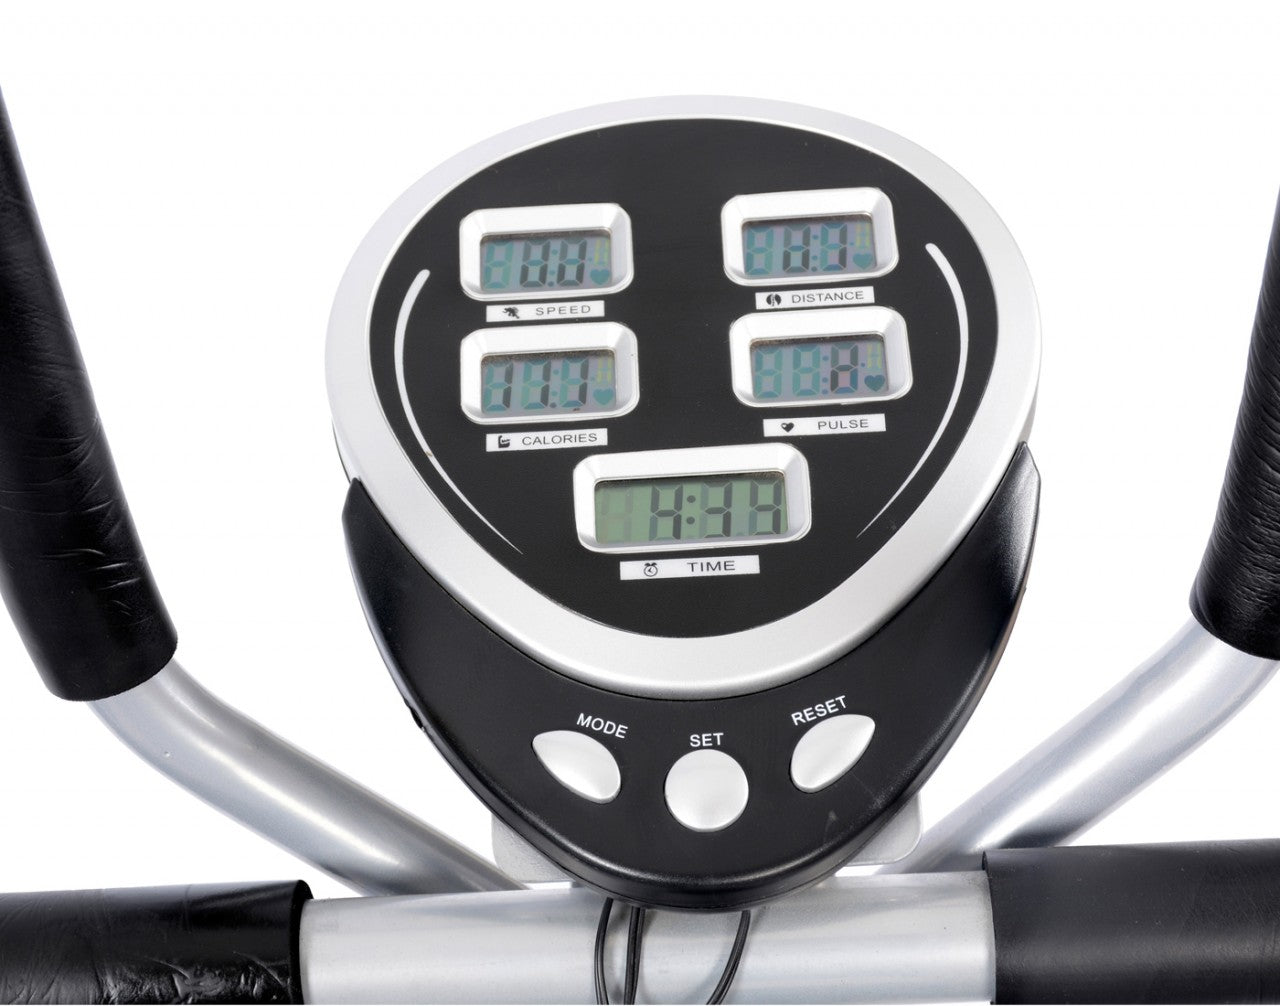 LifeLine Fitness Manual 4 in 1 Treadmill – Dlx